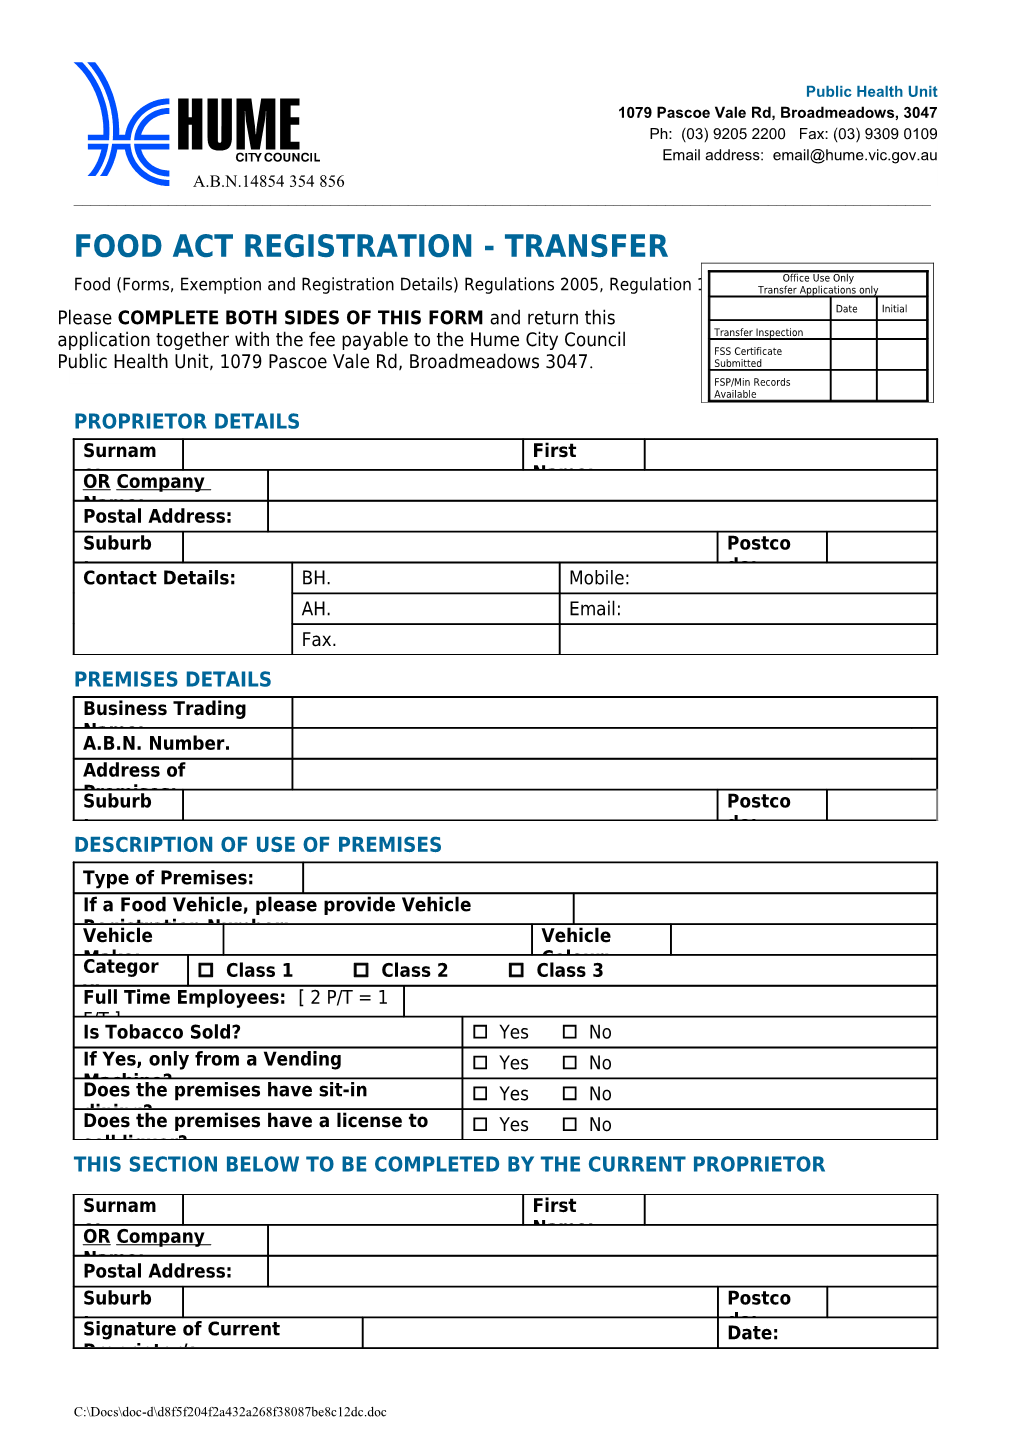 Food (Forms, Exemption and Registration Details) Regulations 2005, Regulation 10